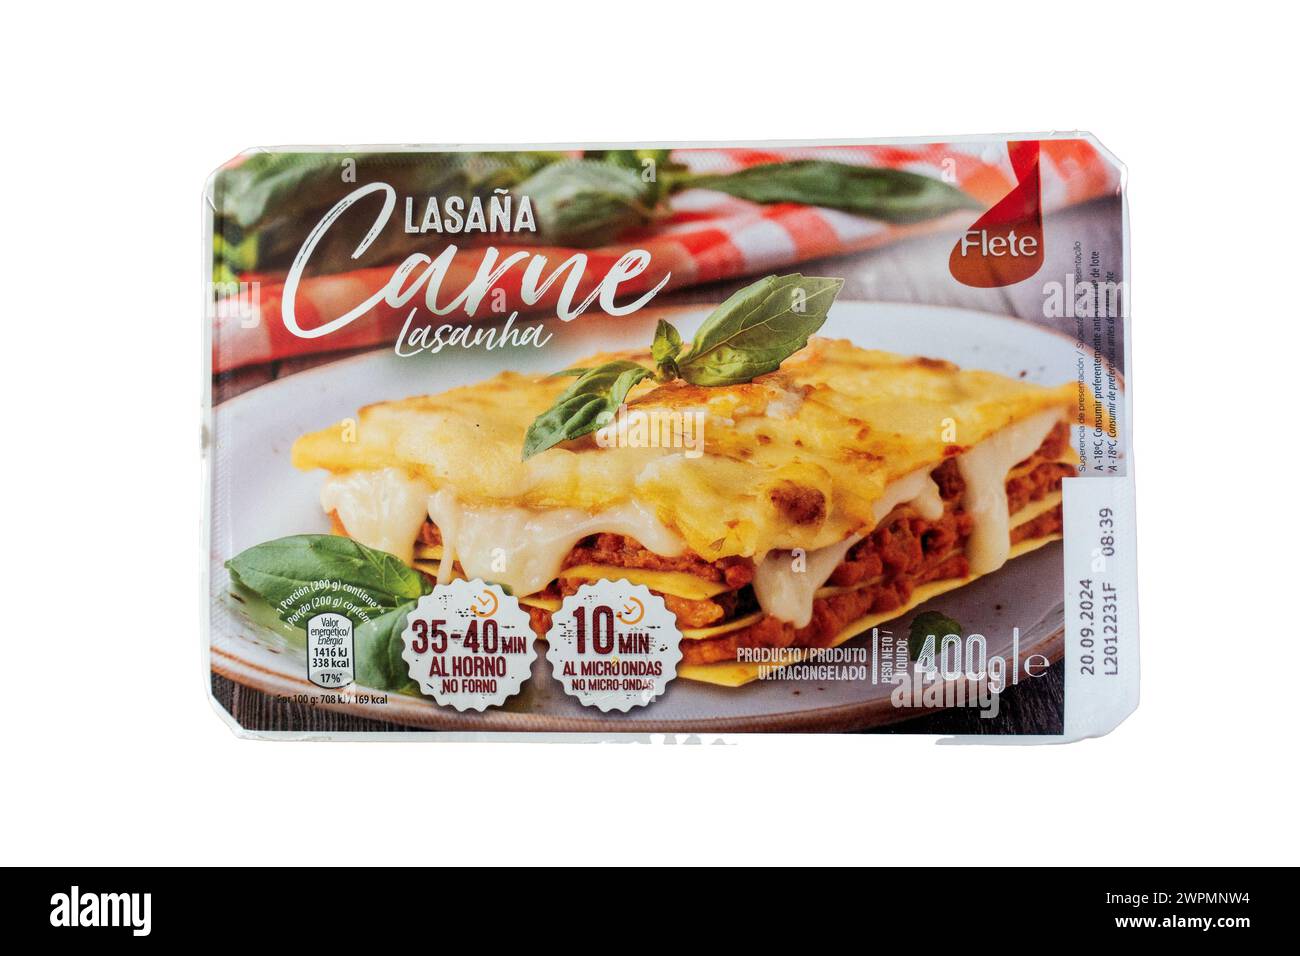 Paket Mit Gefrorenem Fleisch Lasagne, Verkauft In Portugal Von Flete Brand Lasana Carne 400 Gram Paket Eine Portion, Ausgeschnitten Am 6. März 2024 Stockfoto